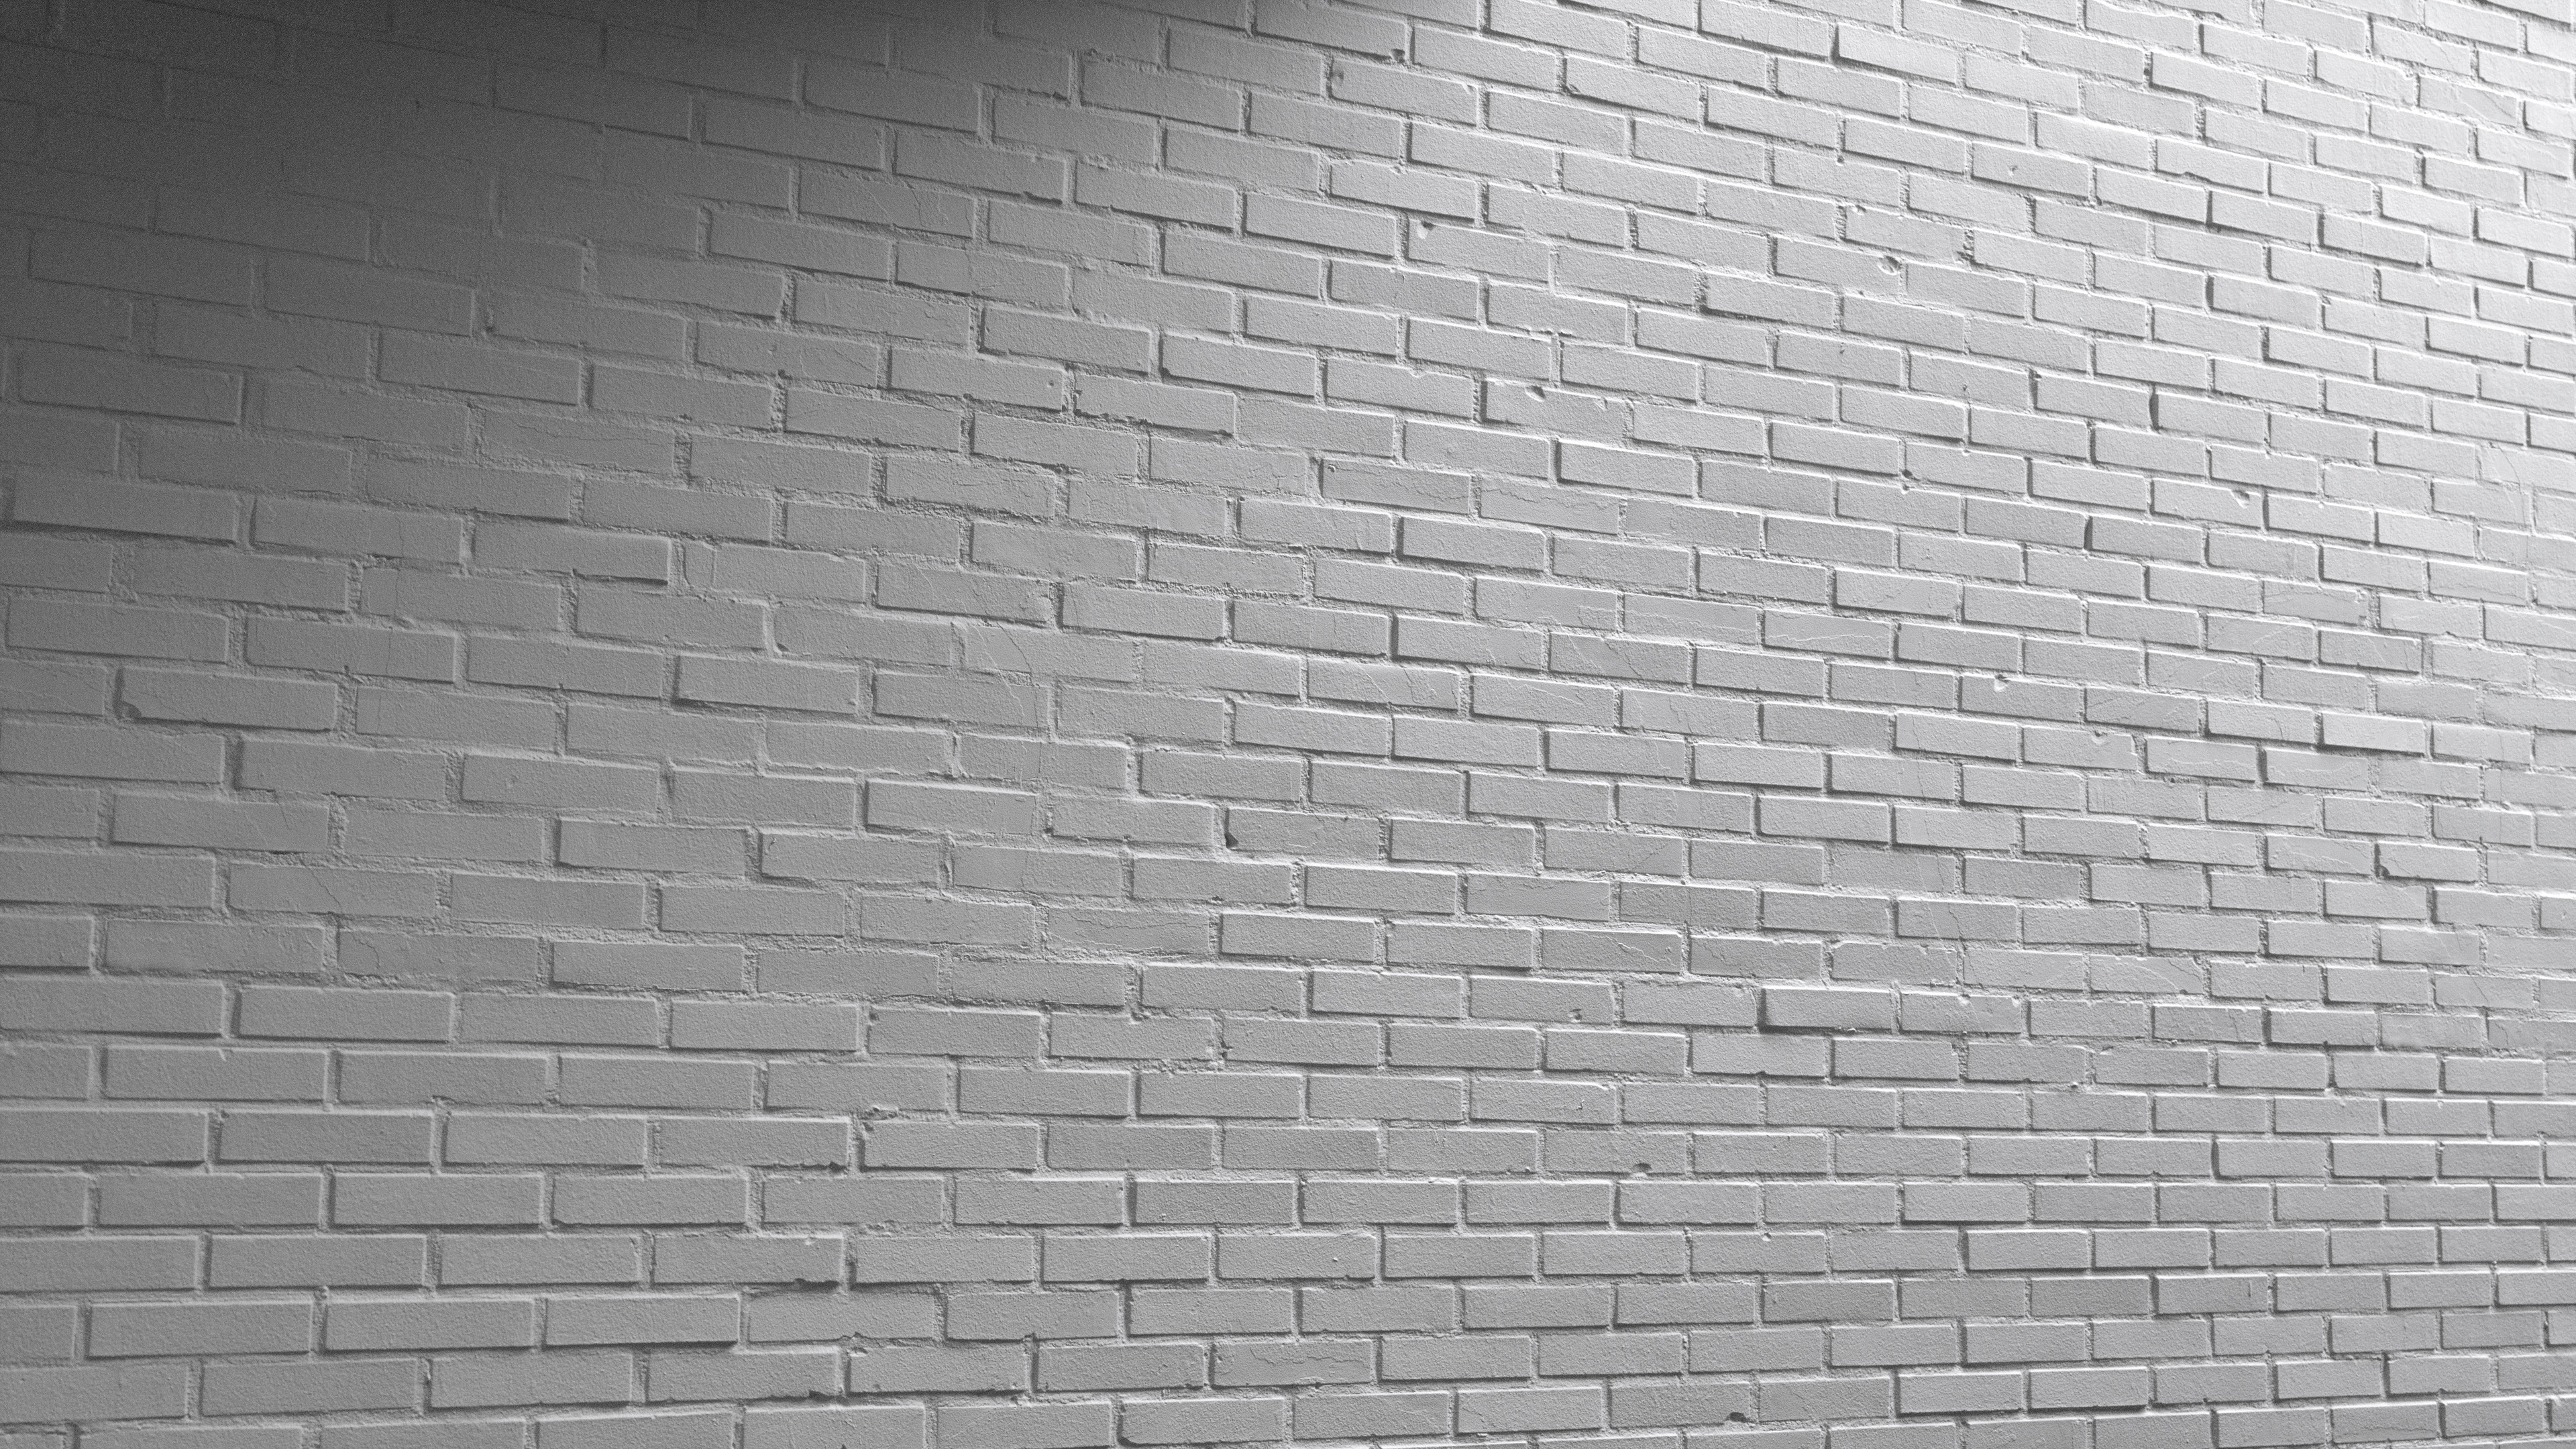 3D Scanned Painted  Brick  Wall  3x3 meters